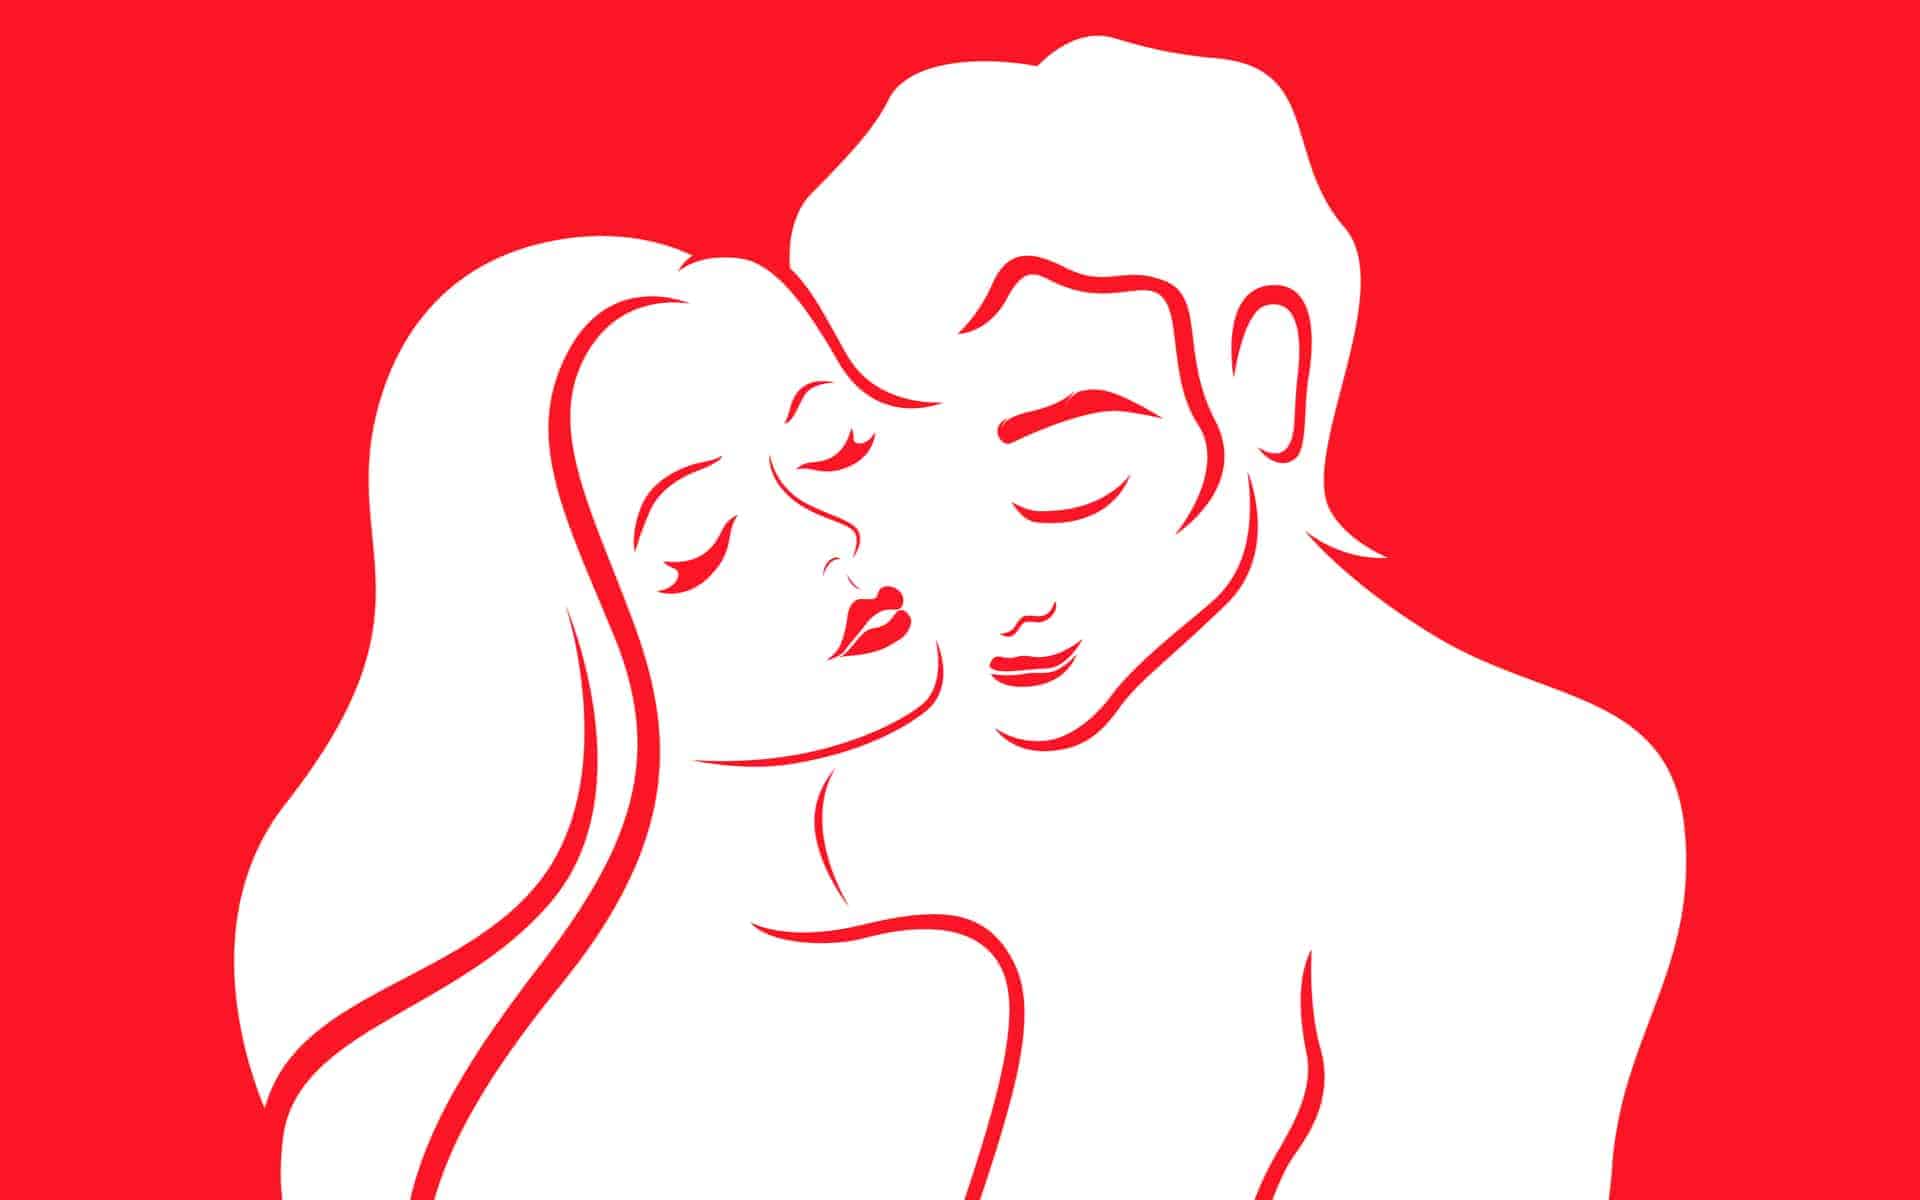 ilustracion de pareja abrazada en color rojo